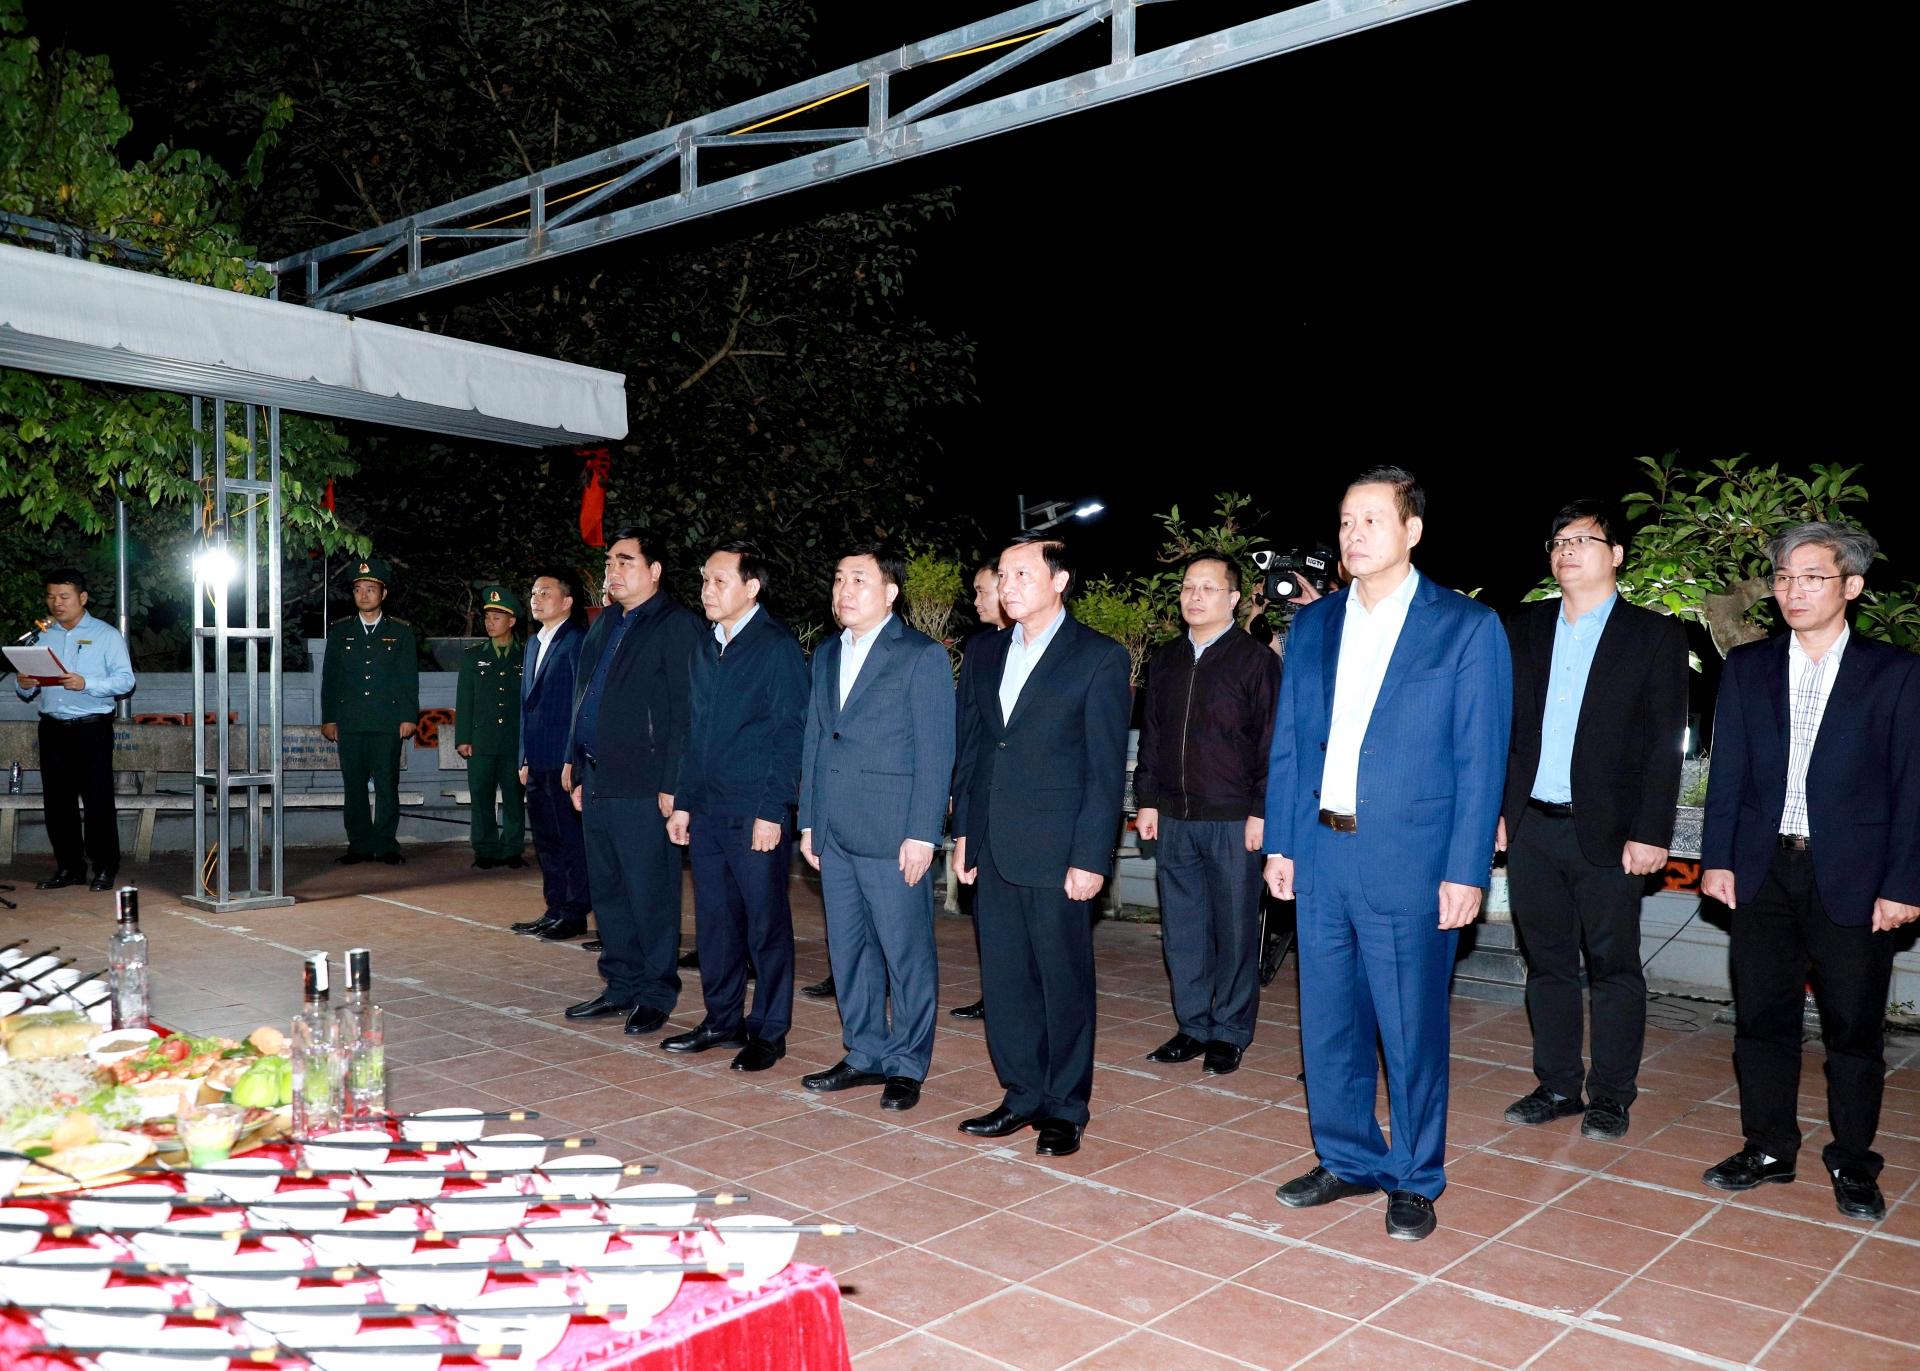 Phó Chủ tịch Quốc hội Nguyễn Khắc Định cùng các đồng chí lãnh đạo tỉnh thắp hương tưởng nhớ các AHLS tại Đền thờ các AHLS trên Điểm cao 468.